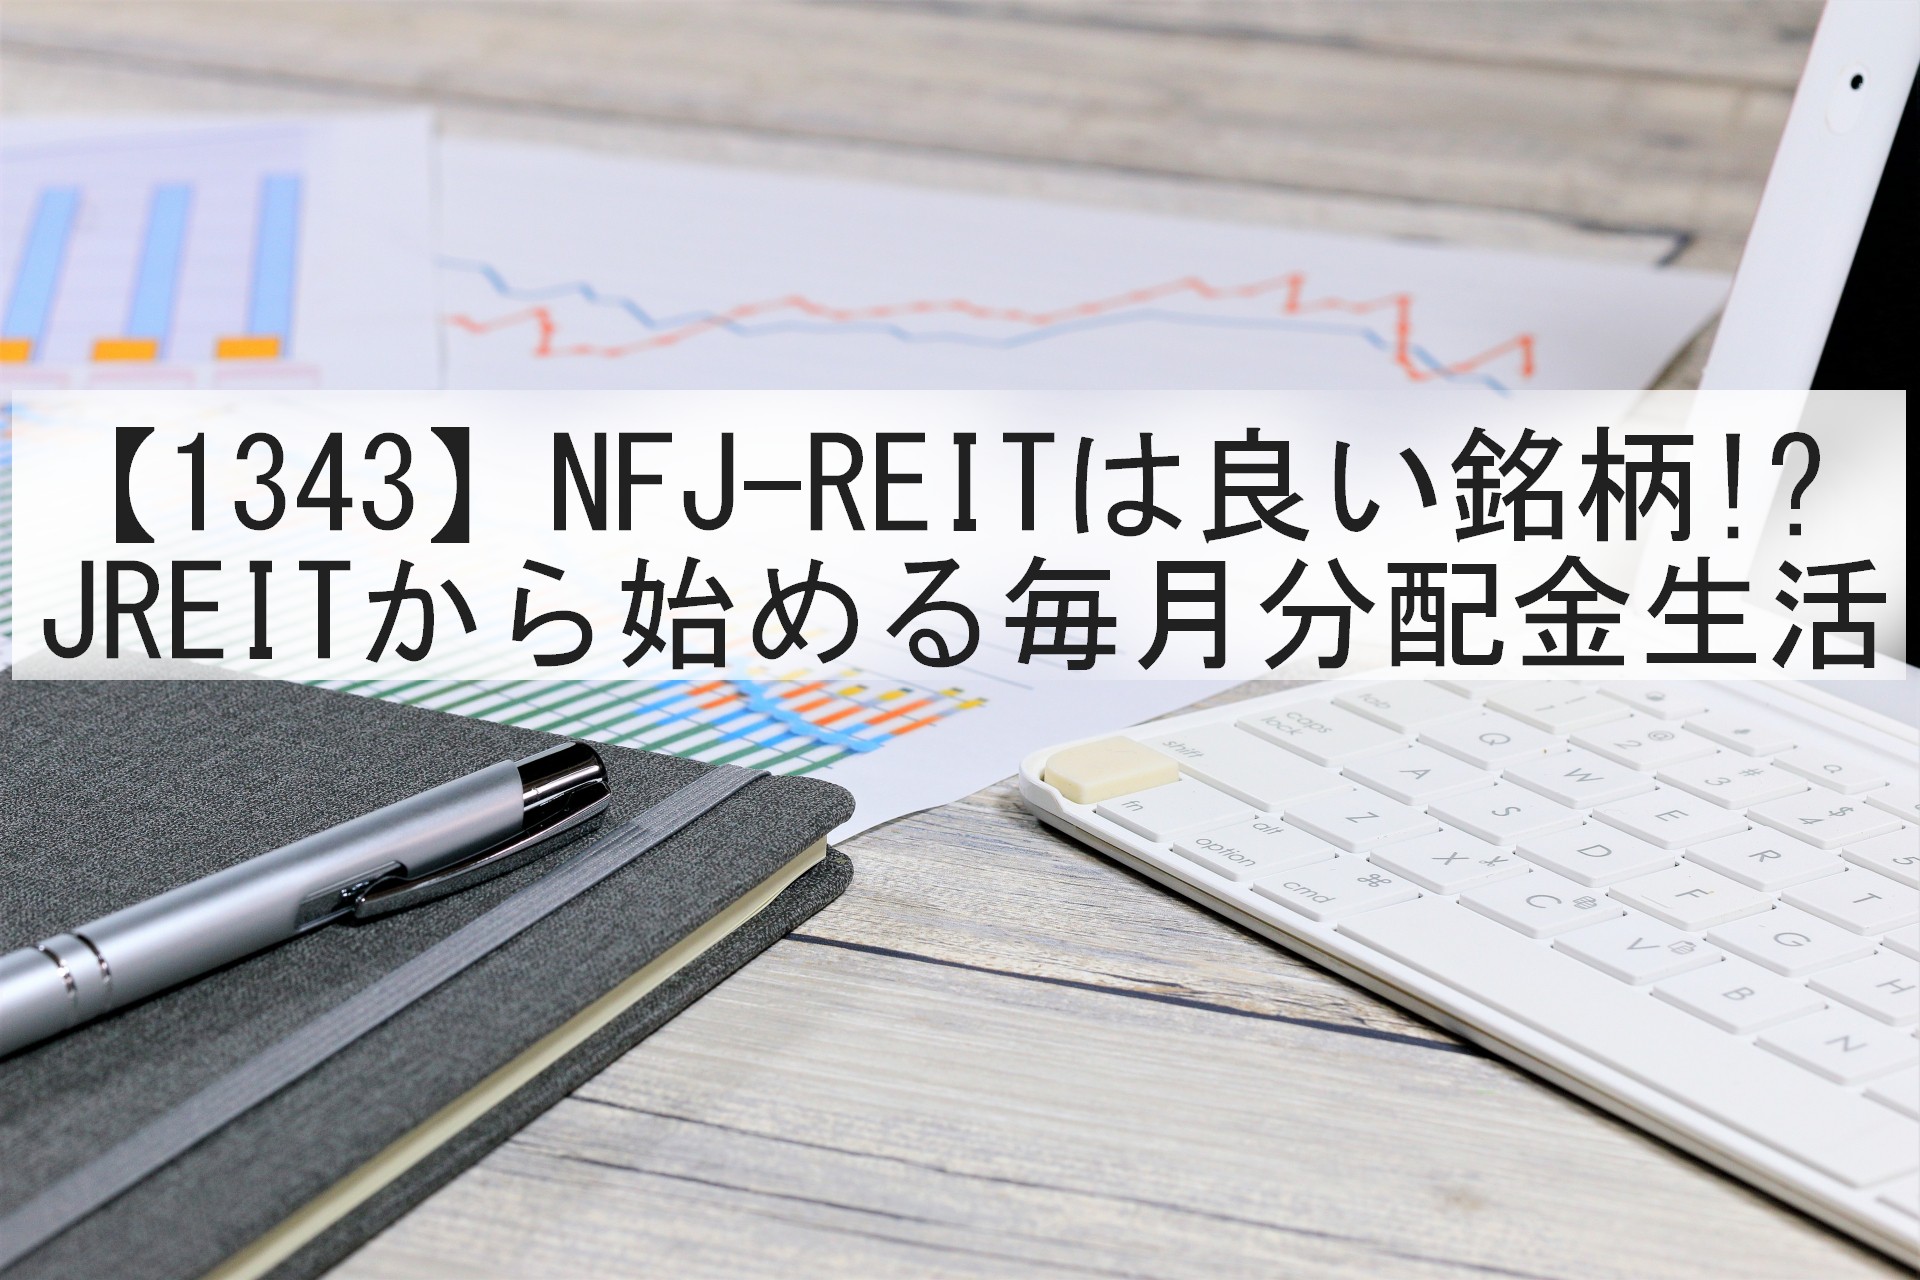 画像NFJ-REITは良い銘柄!?－JREITから始める毎月分配金生活